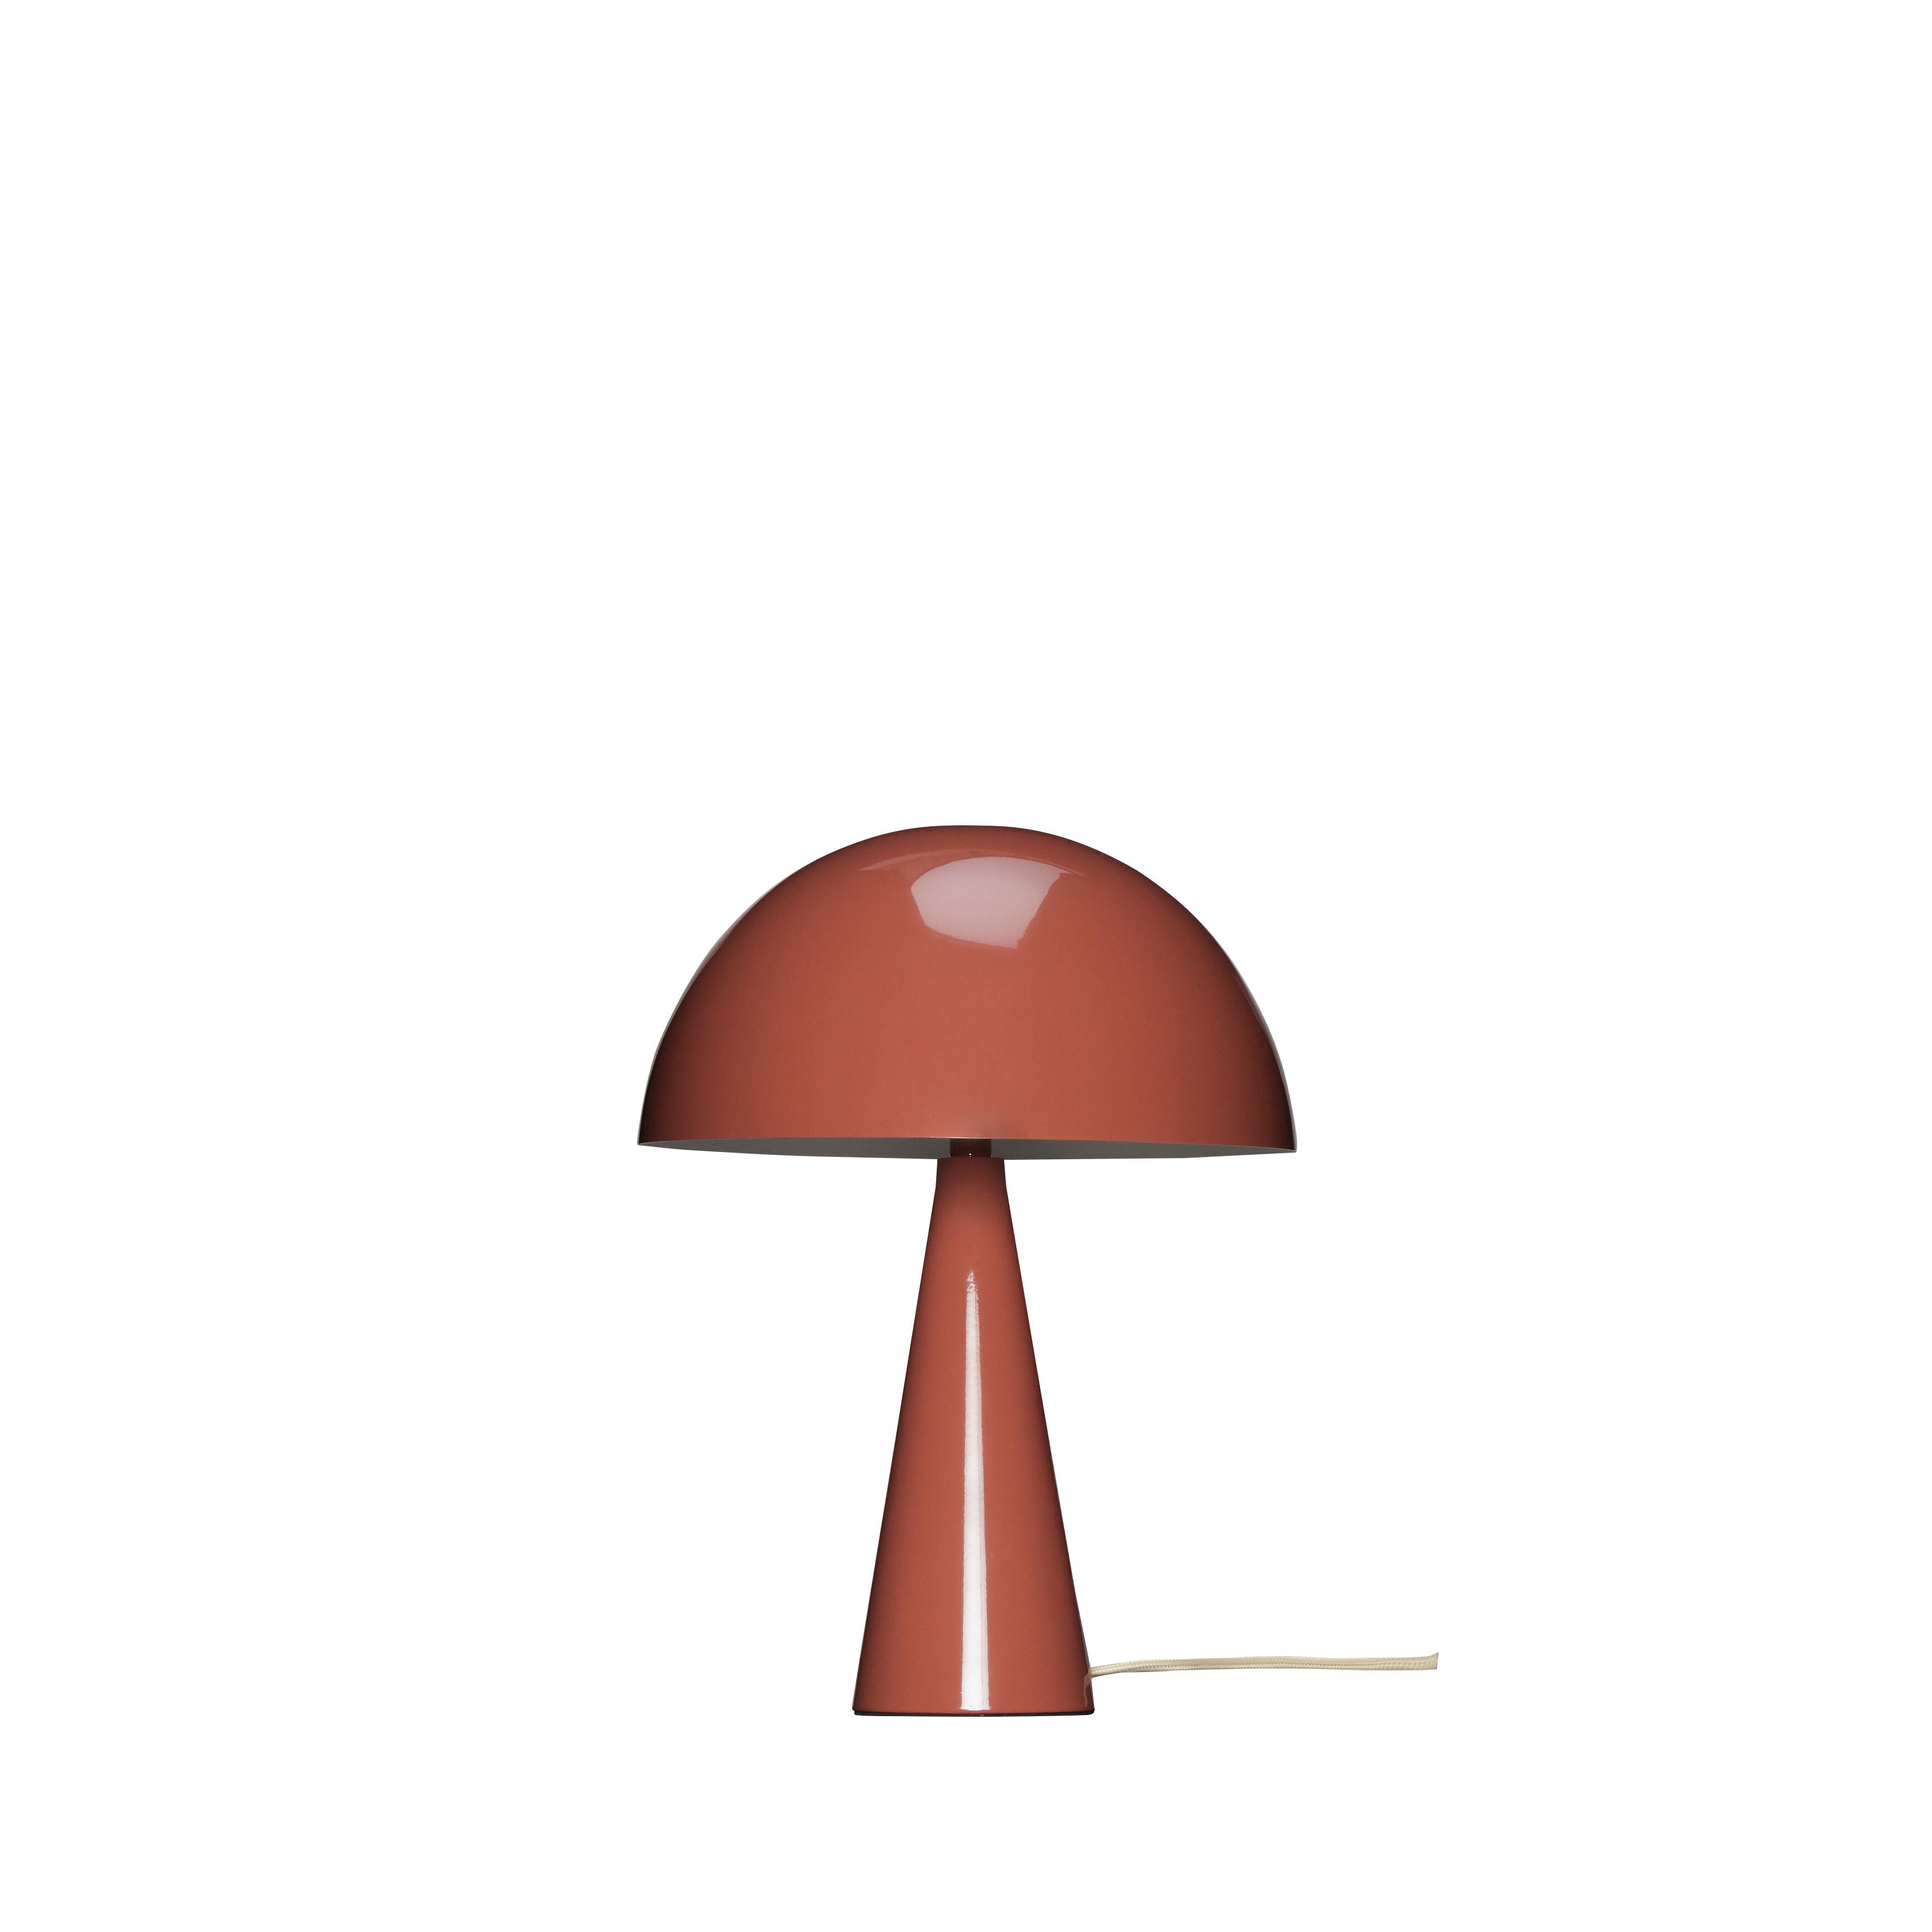 Se Hübsch Mush Bordlampe Mini - ø25 - rødbrun/sand hos Bad&Design